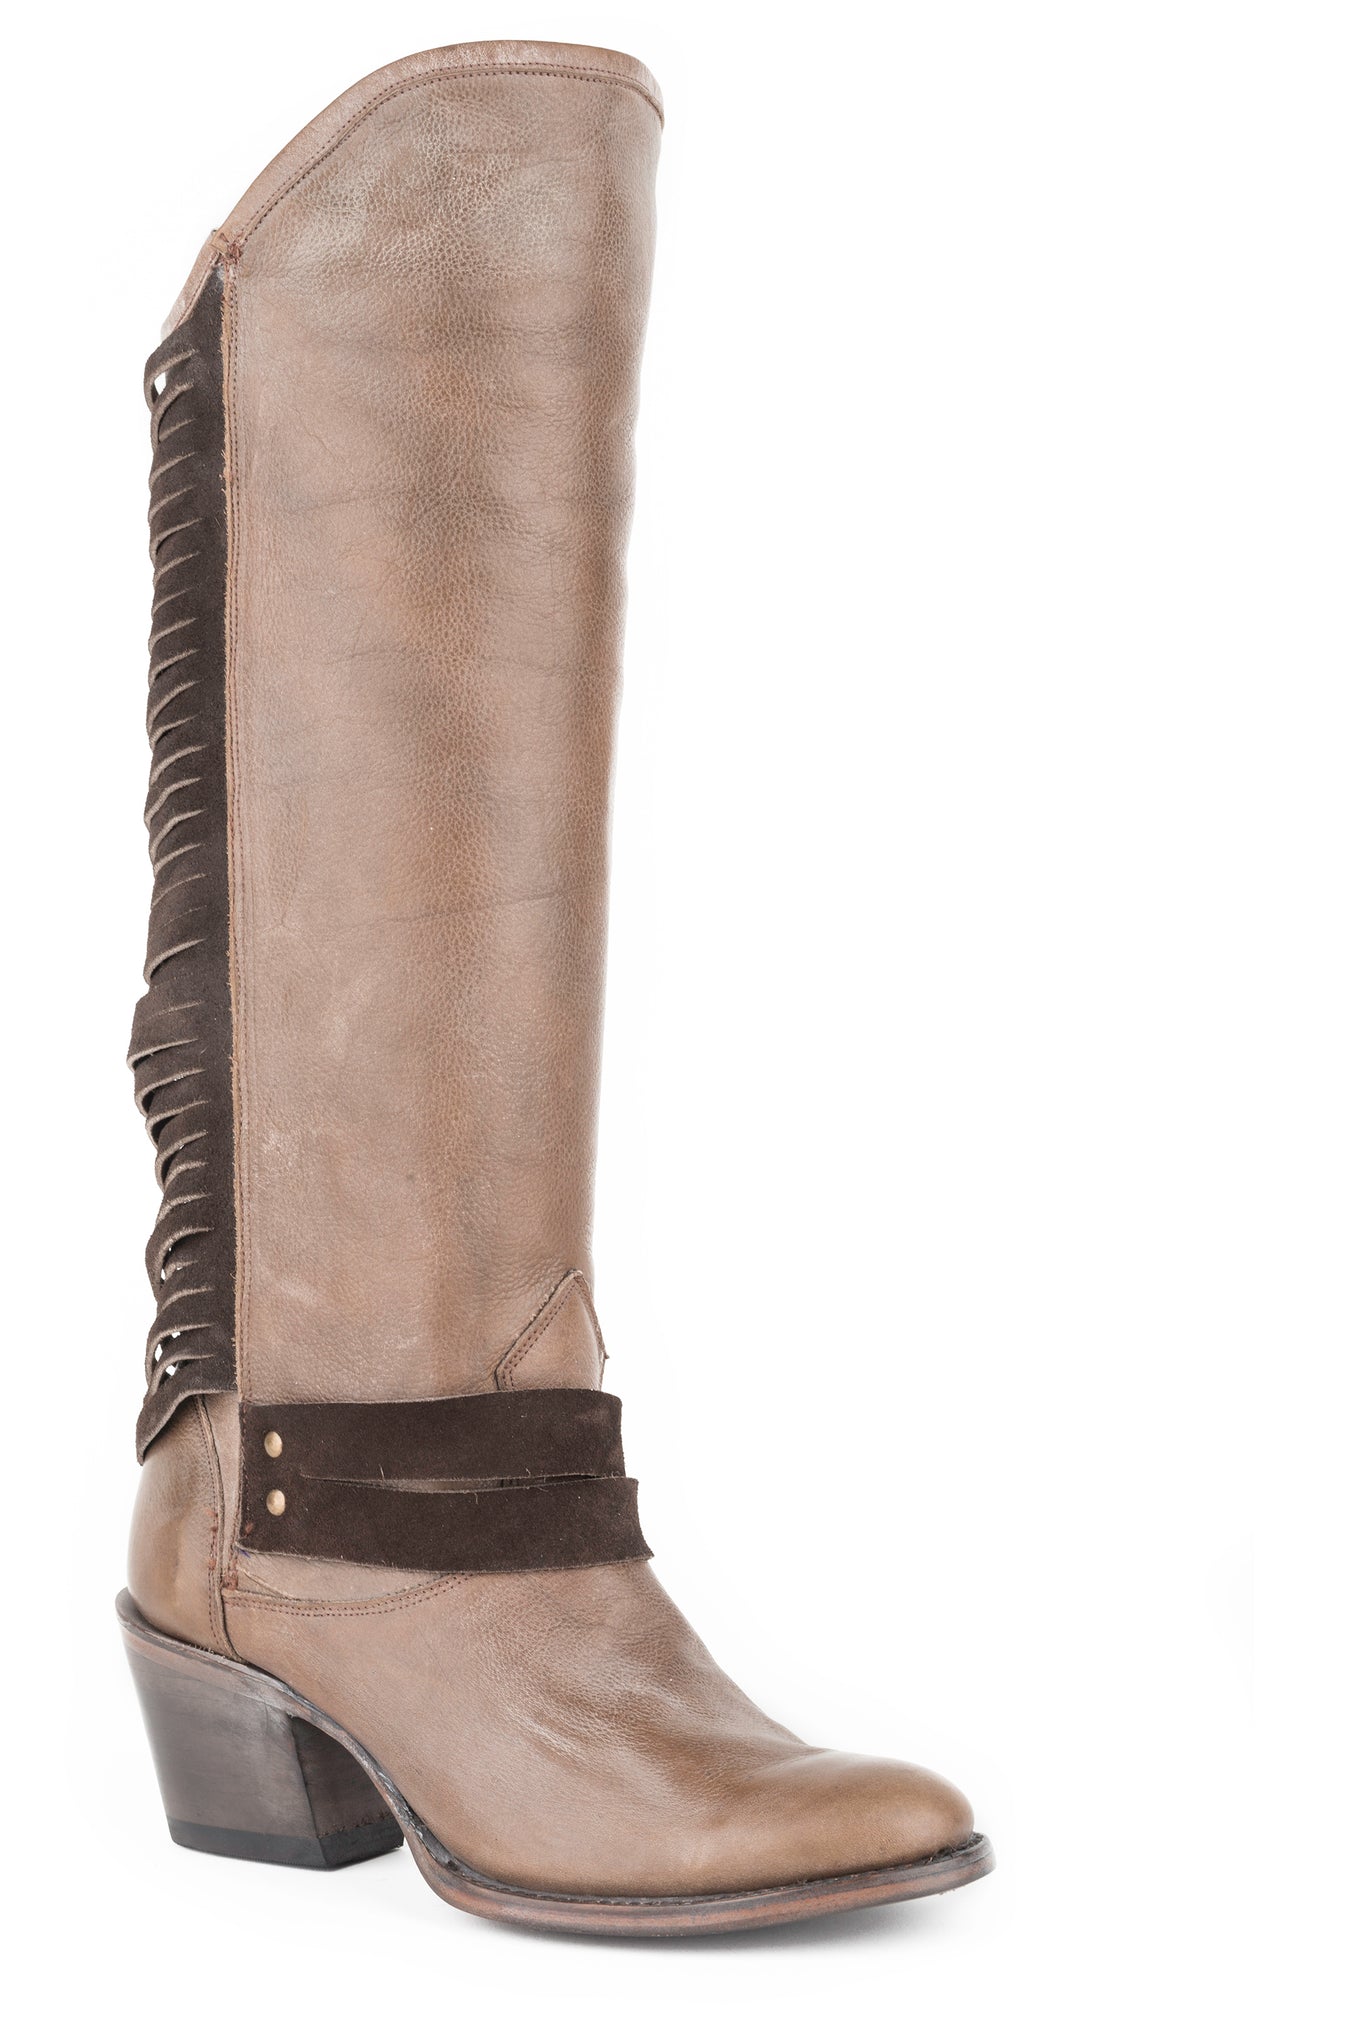 Women's Stetson Boots